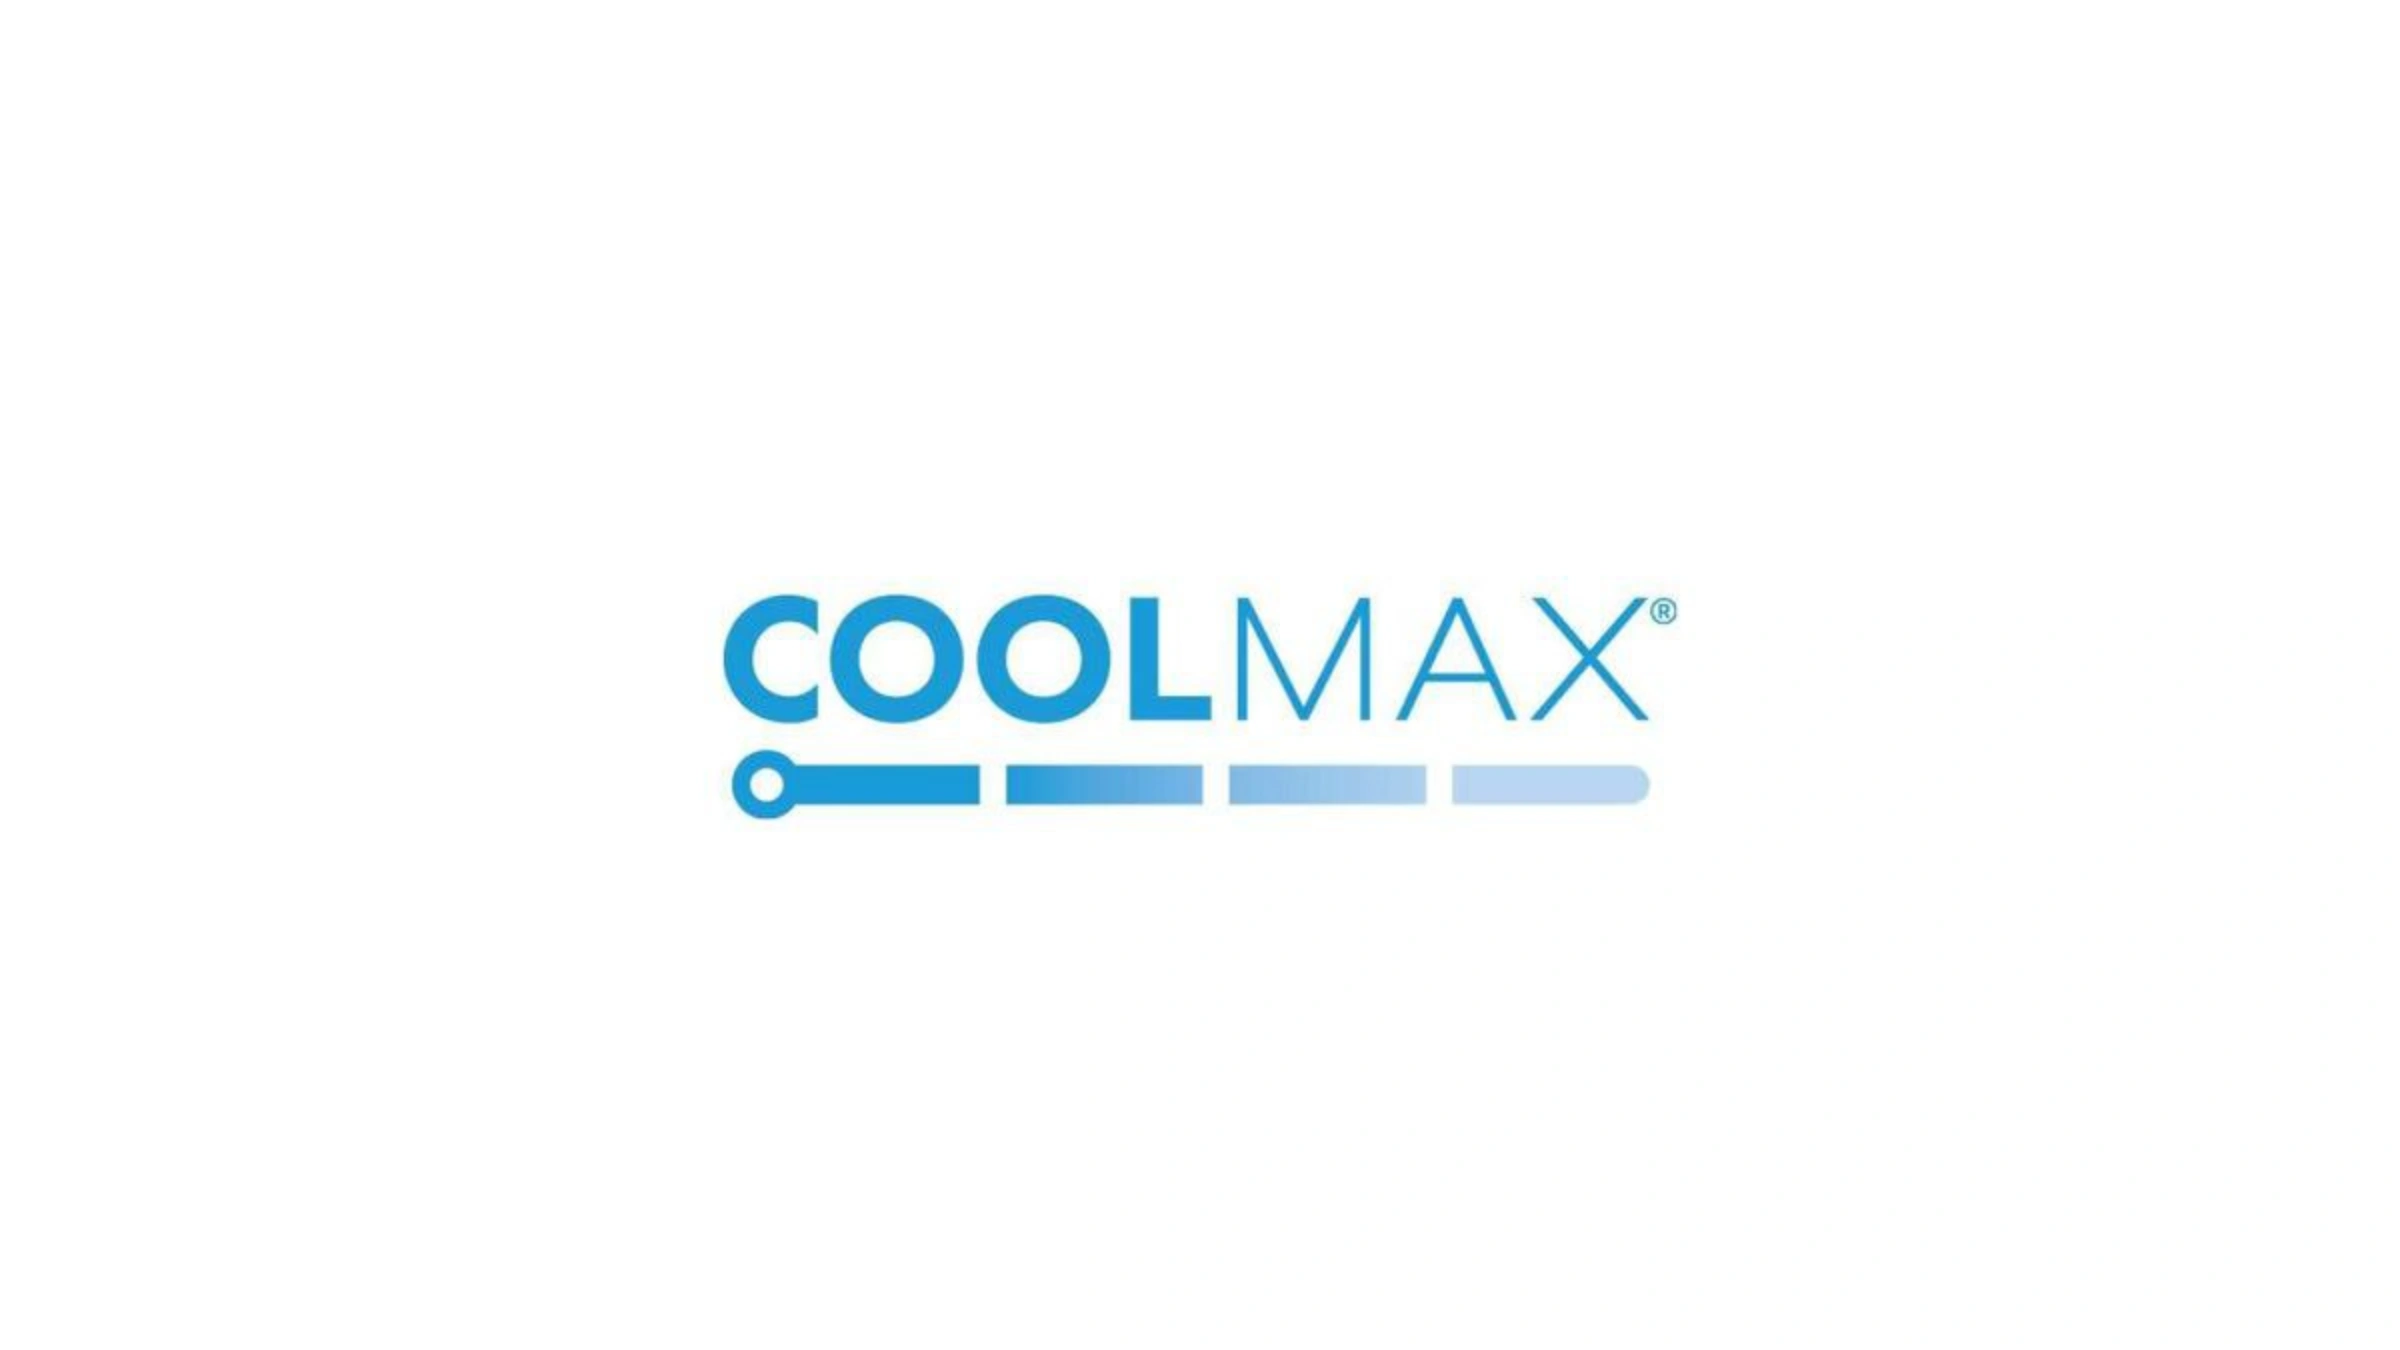 پارچه Cool max چیست ؟